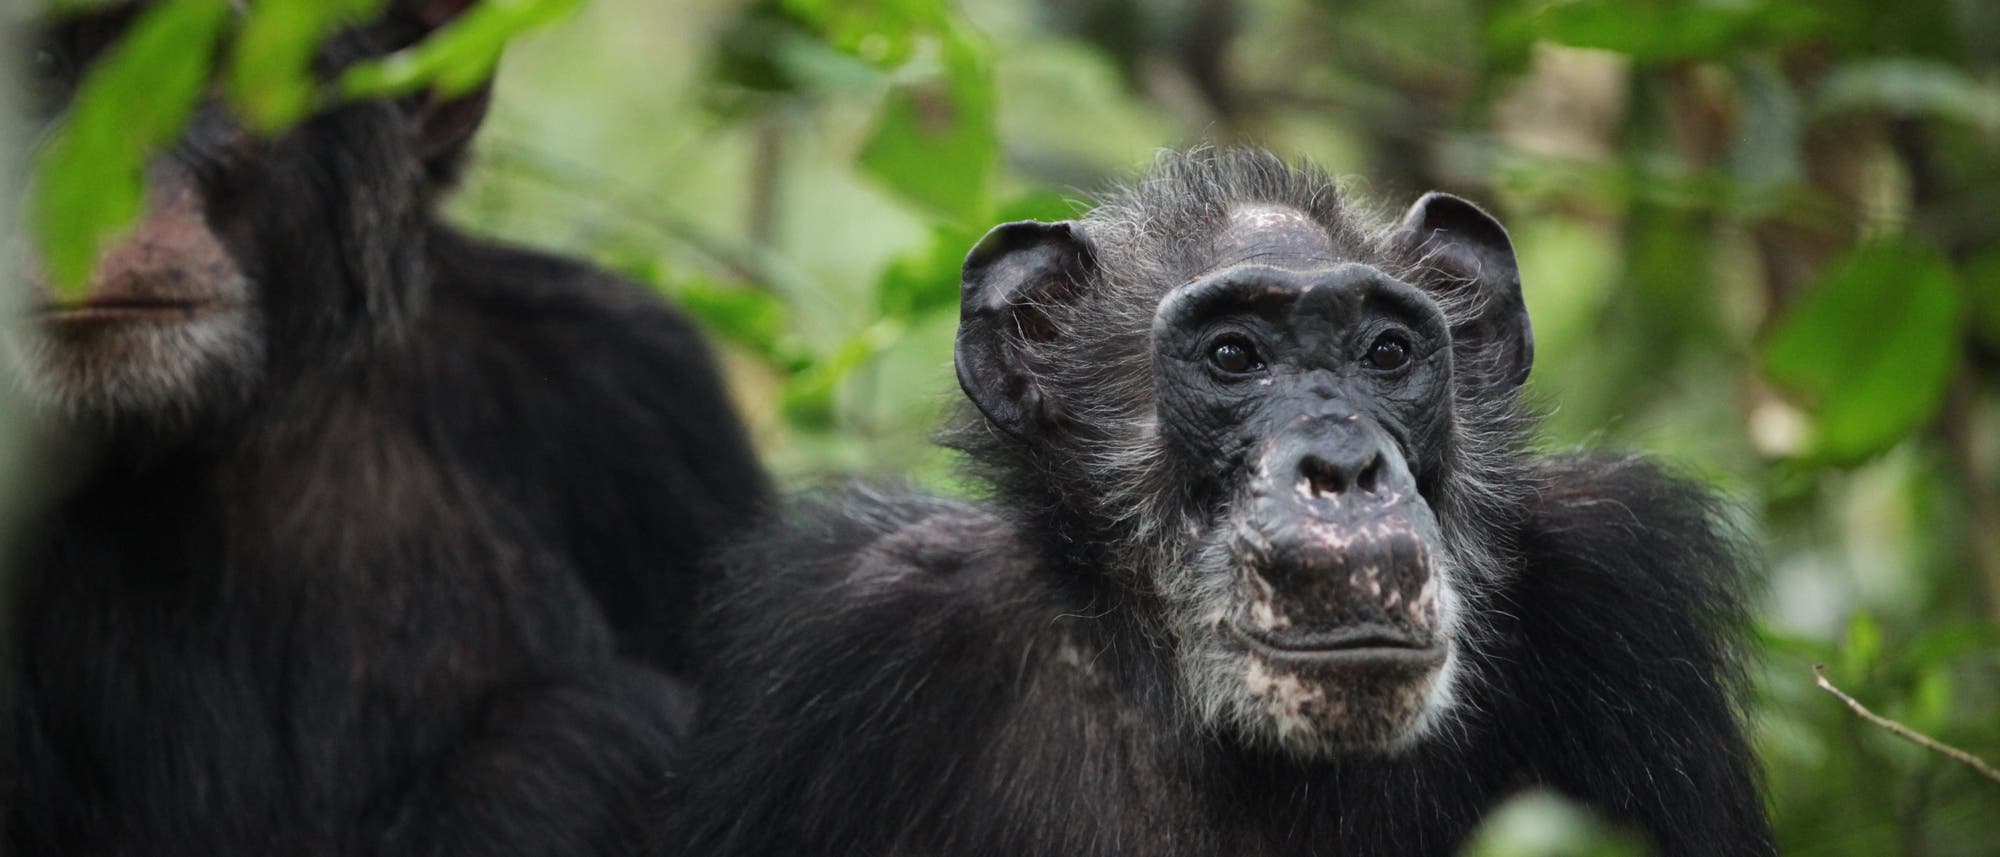 Ein ältere Schimpansendame, die bereits in der Menopause ist, sitzt im Wald